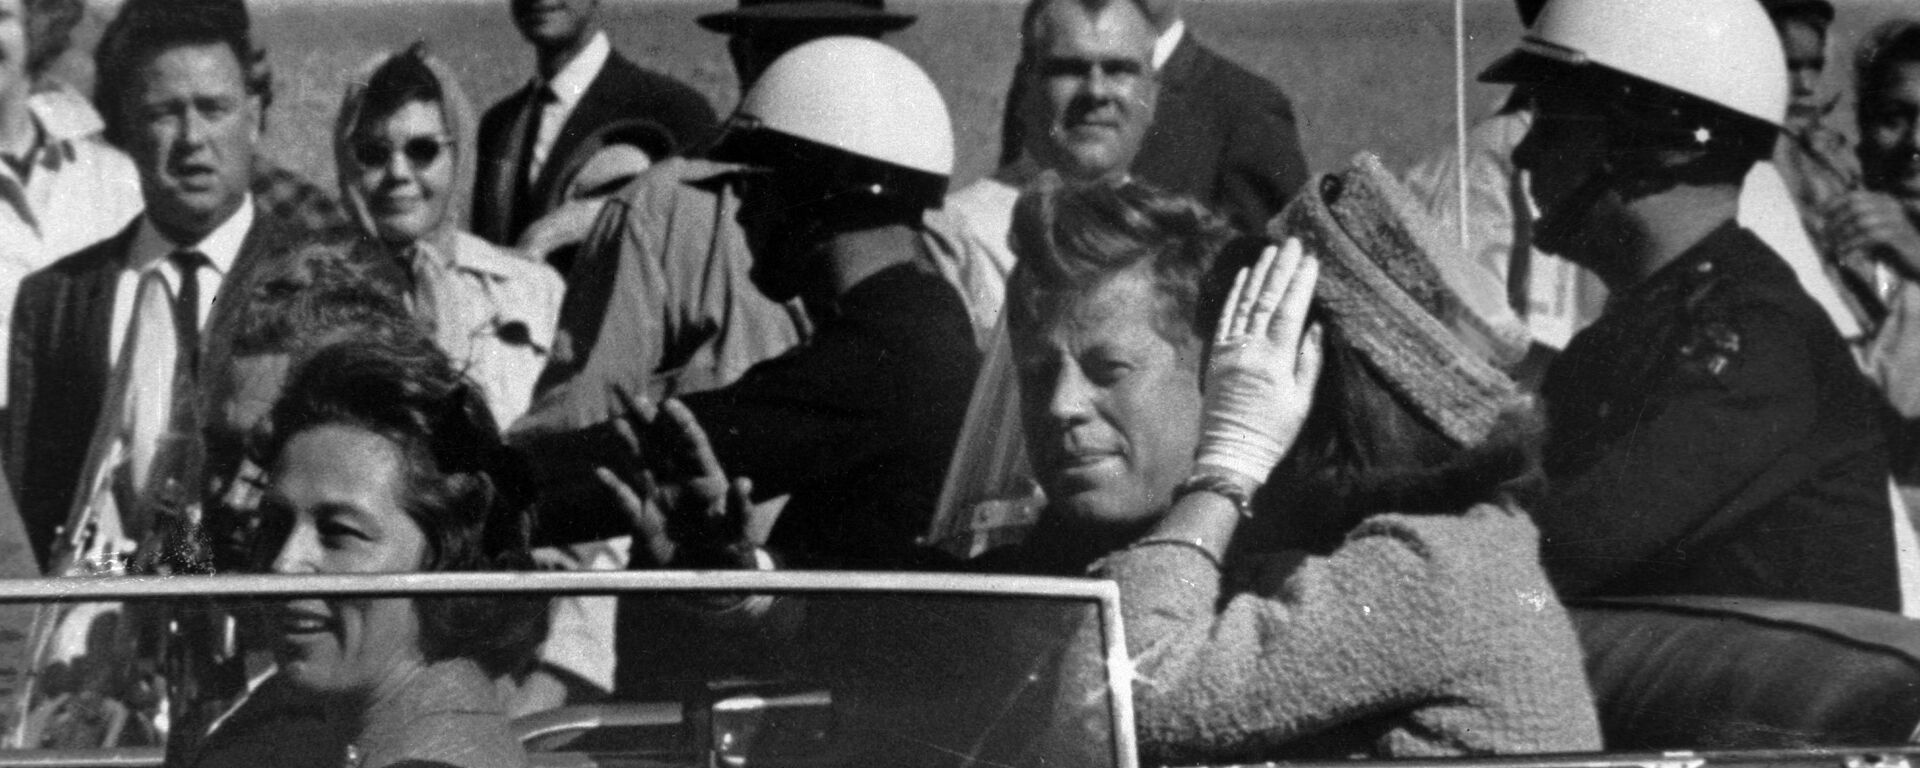 Predsednik SAD Džon Kenedi u Dalasu, 22. novembra 1963. minut pre ubistva. - Sputnik Srbija, 1920, 12.07.2021